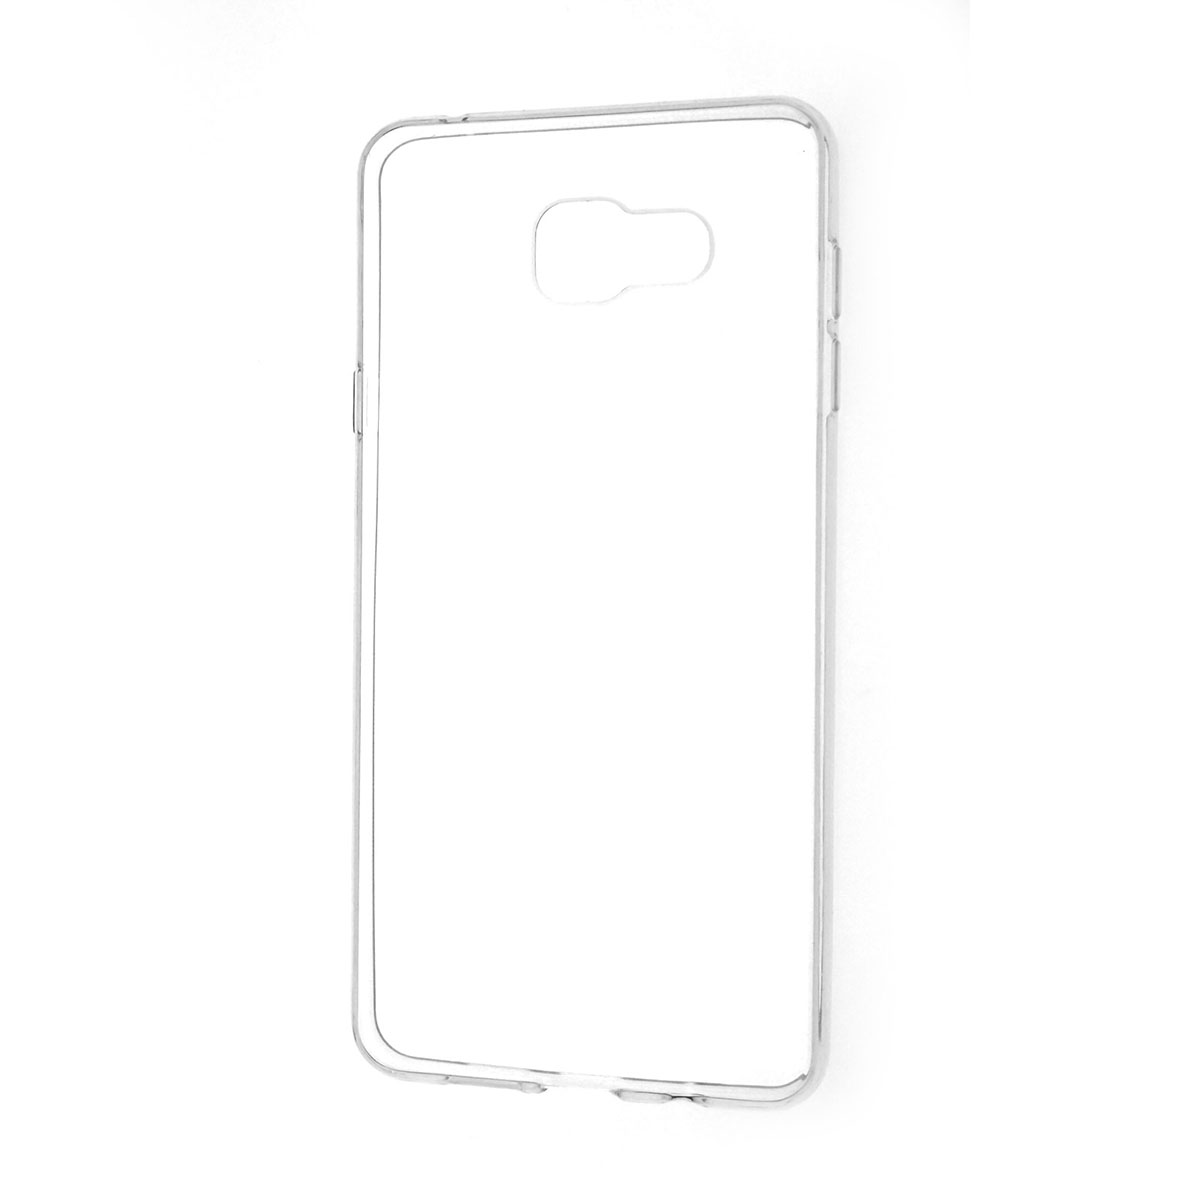 Чехол накладка TPU Case для SAMSUNG Galaxy A7 2016 (SM-A710), силикон, цвет прозрачный.